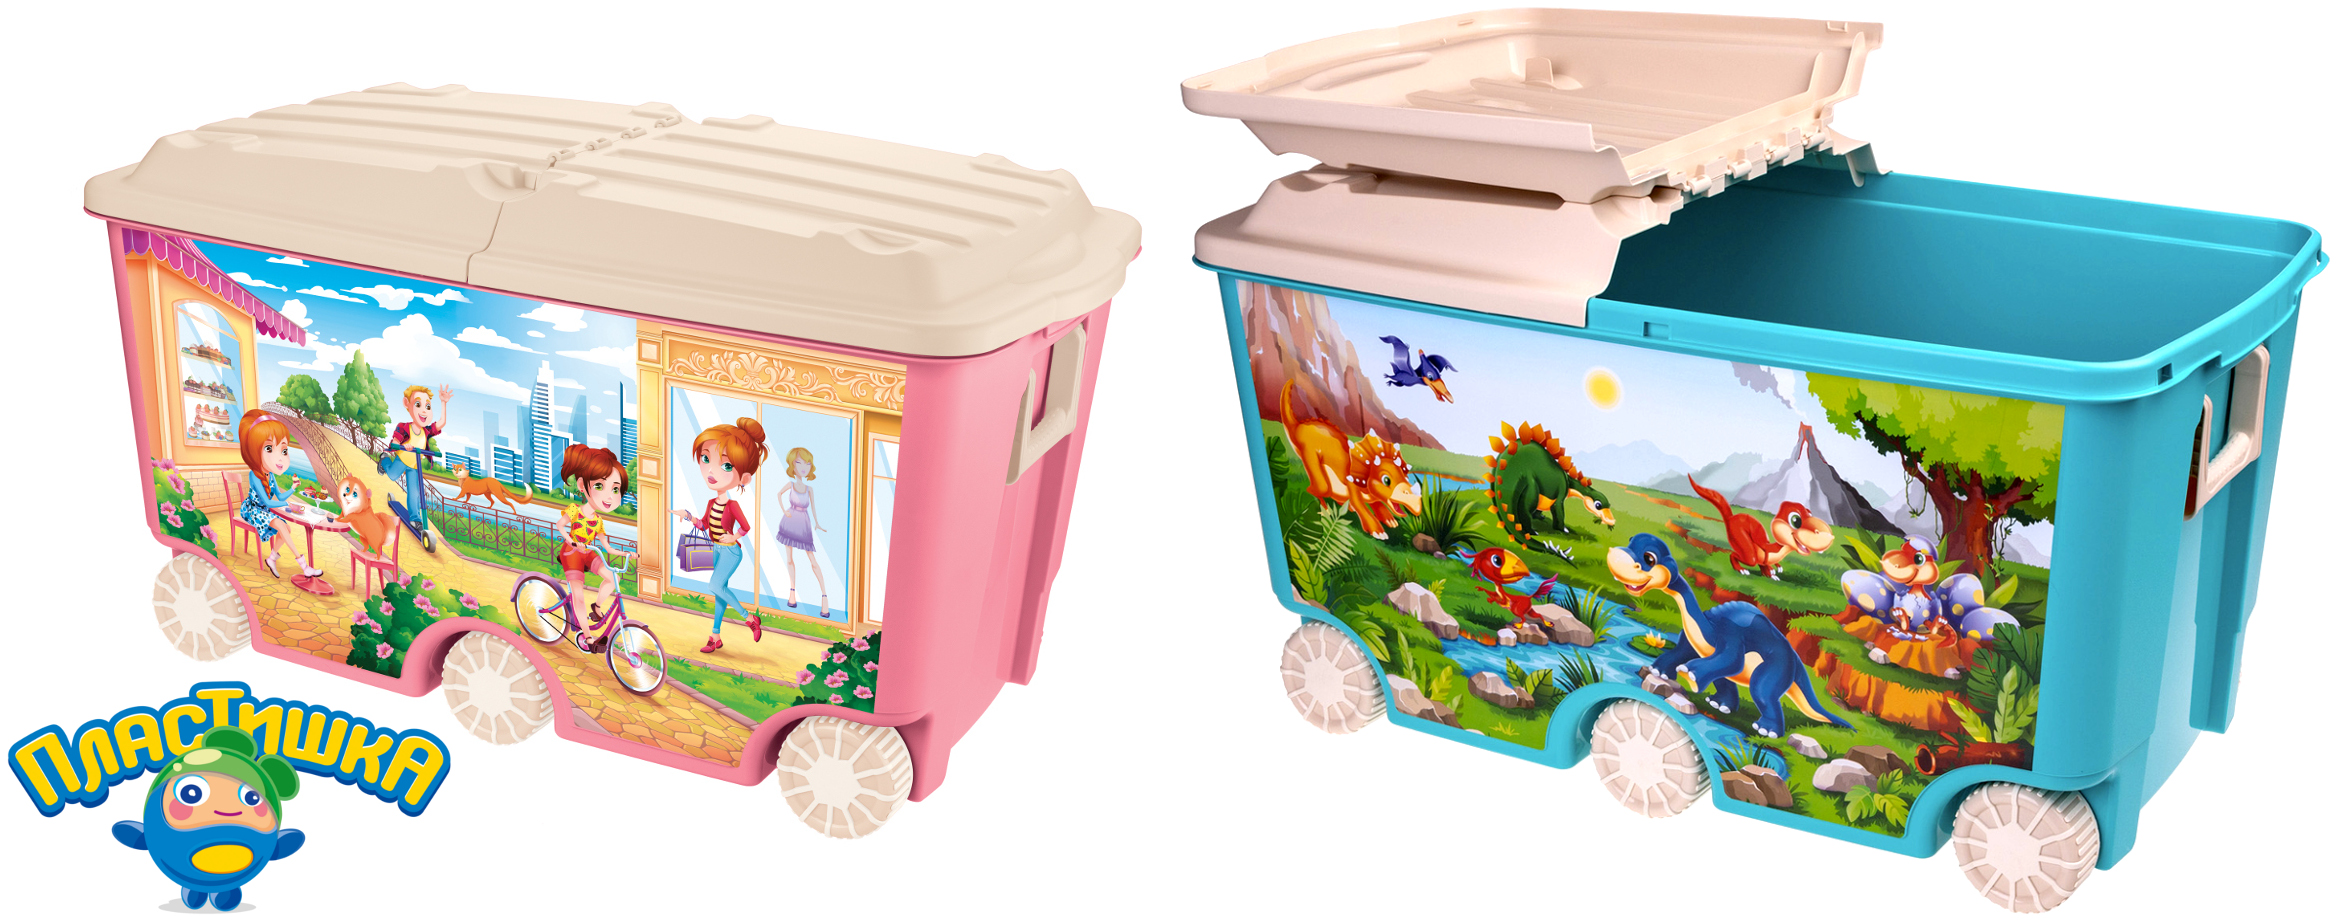 Новинка для детской комнаты: шестиколёсный ящик для игрушек «Пластишка»